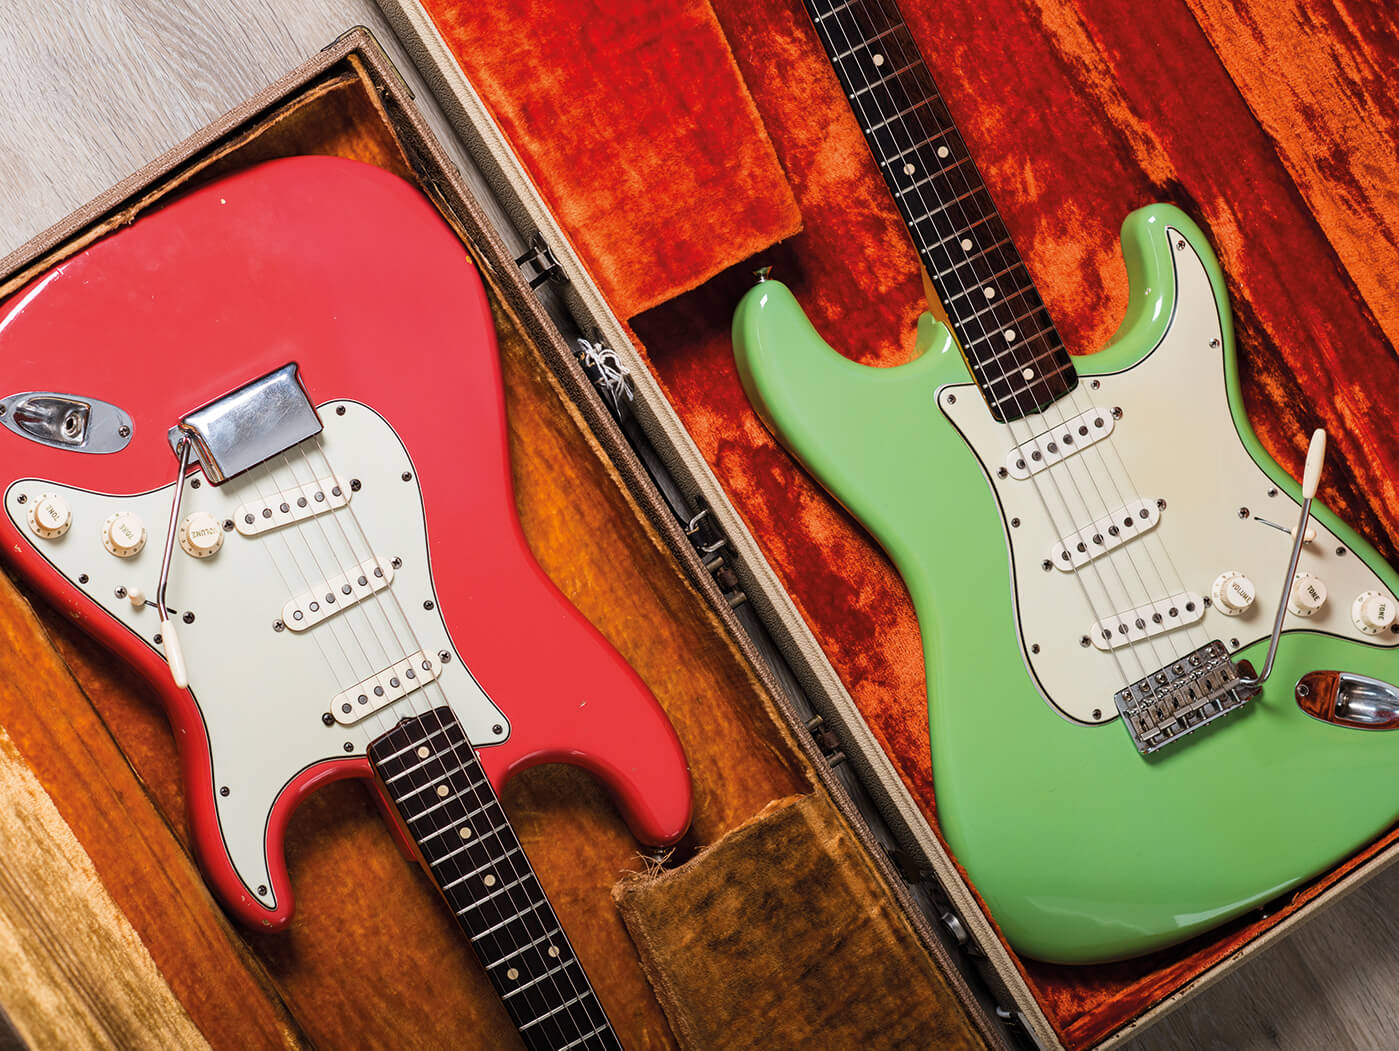 Fender Guitar Shop Sign Electric Metal Vintage Style Pick Guard String Large